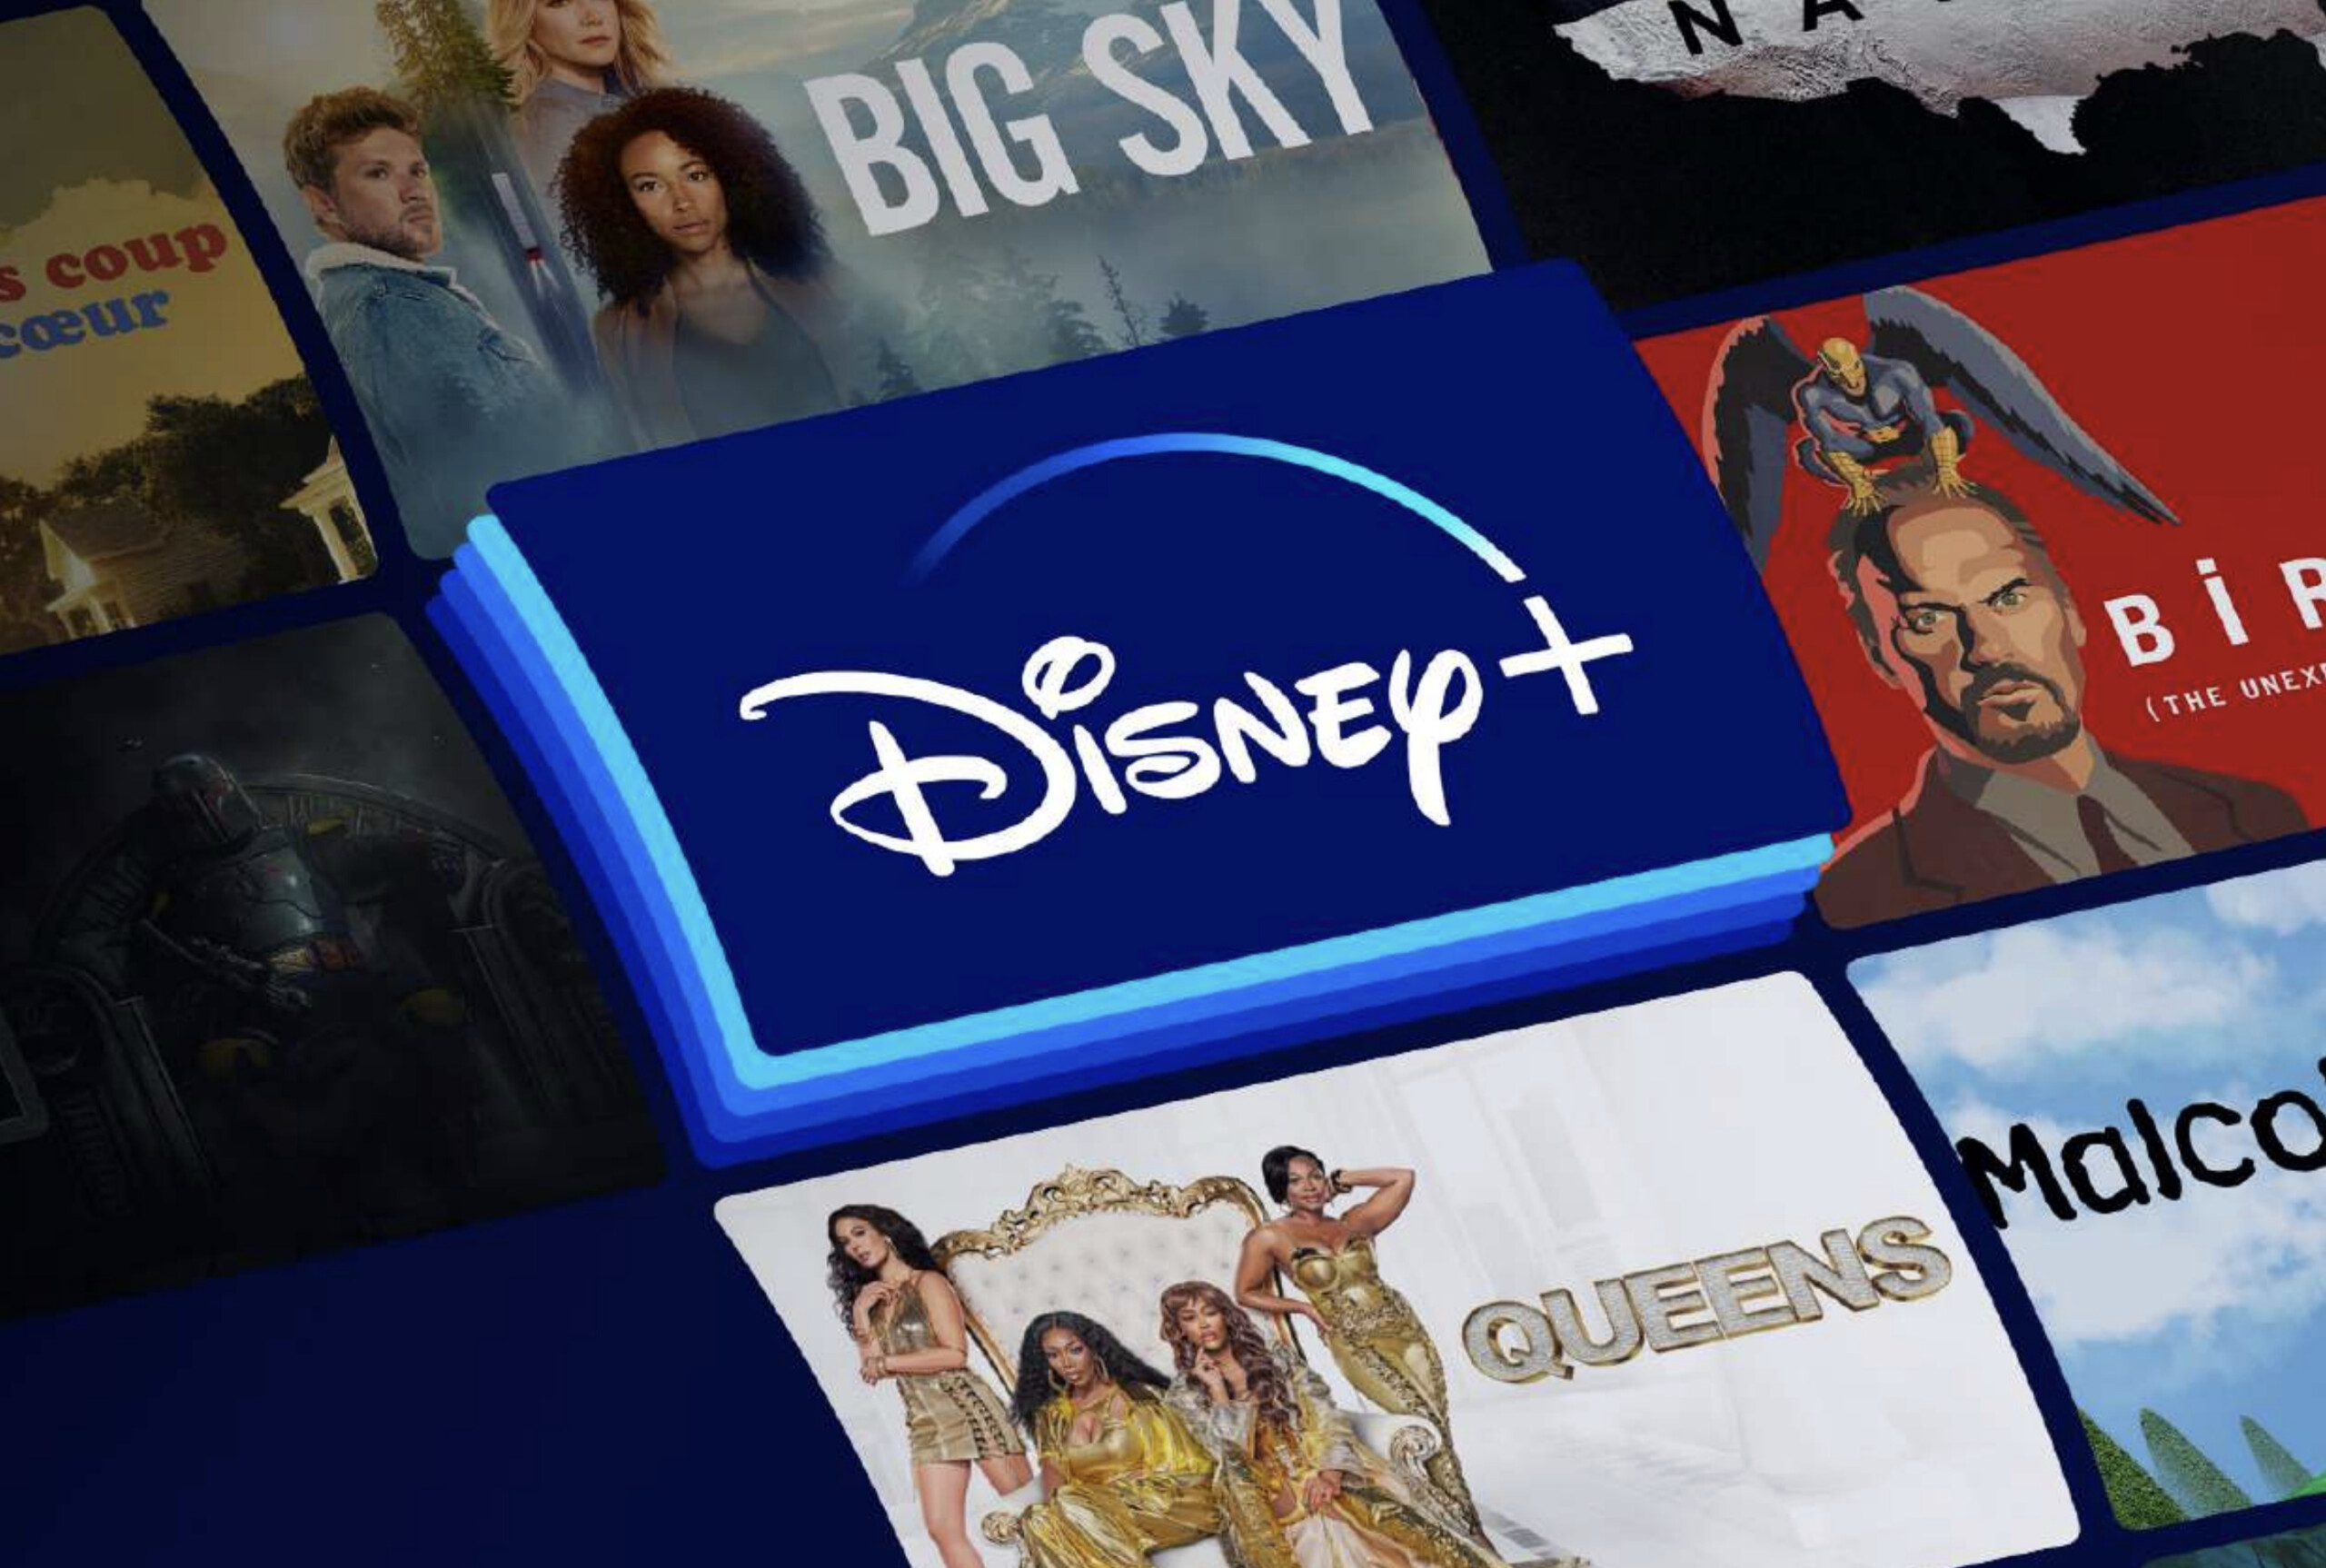 Disney+ : toutes les nouveautés séries et films de janvier 2022